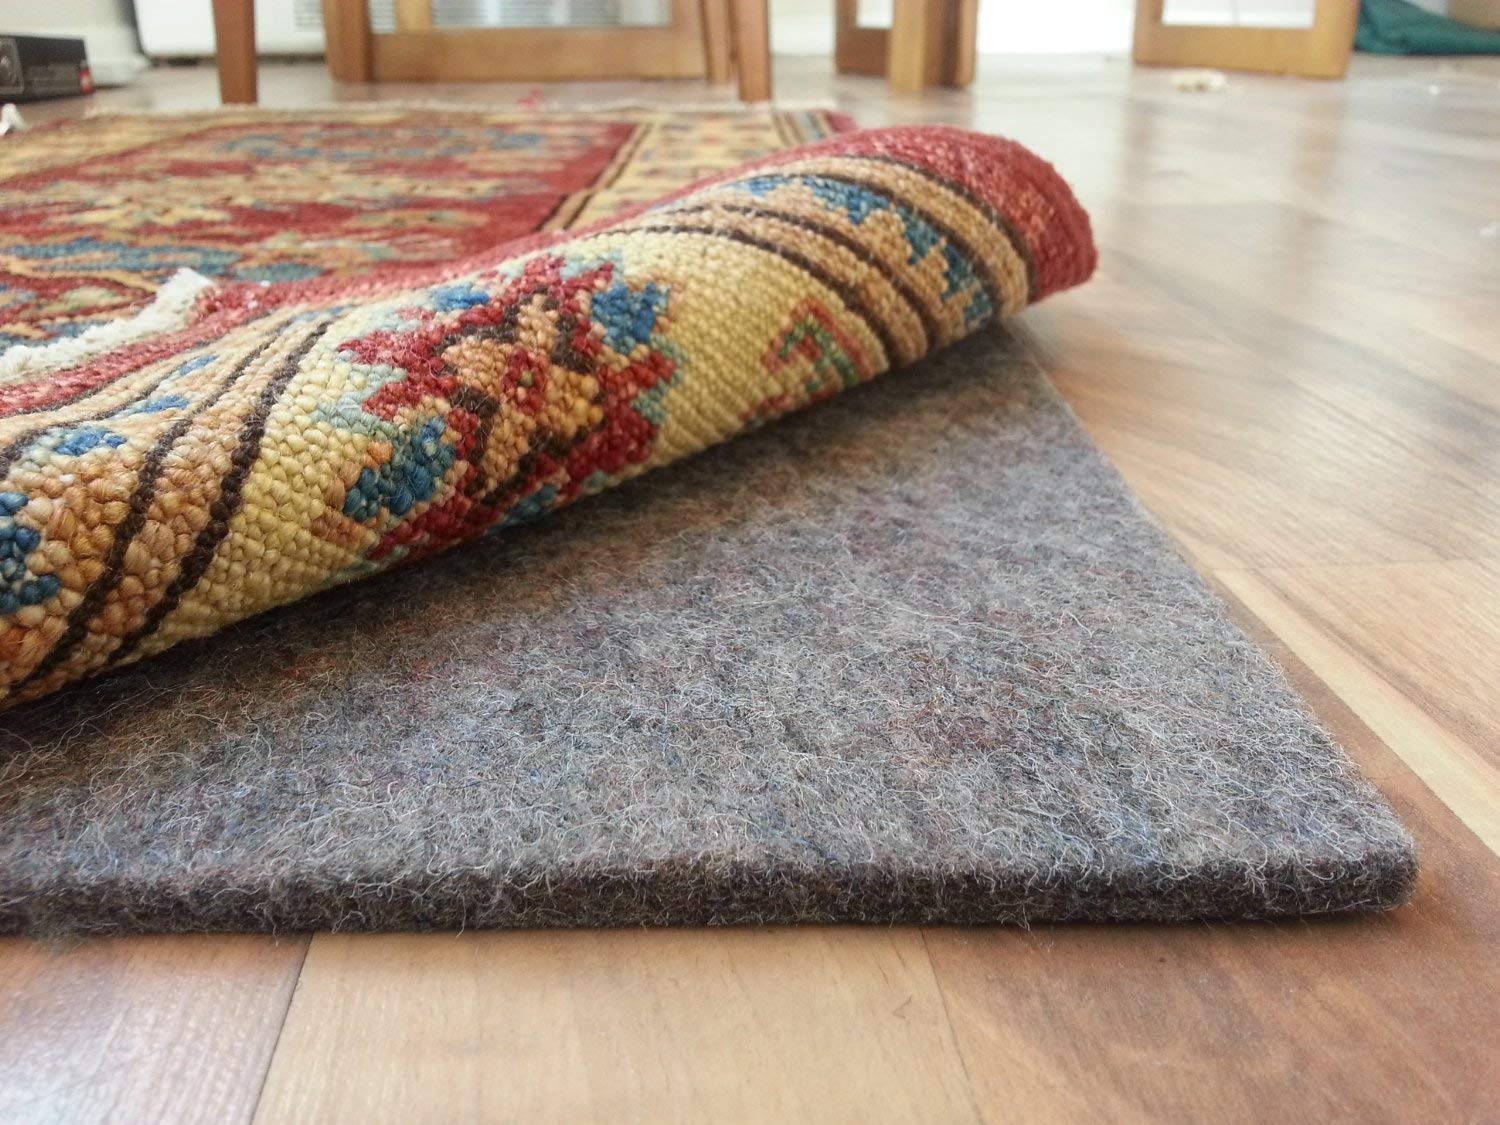 rug pad for carpet amazon.com: rug pad central 8u0027 x 10u0027 100% felt rug pad, extra thick- IIIACMZ